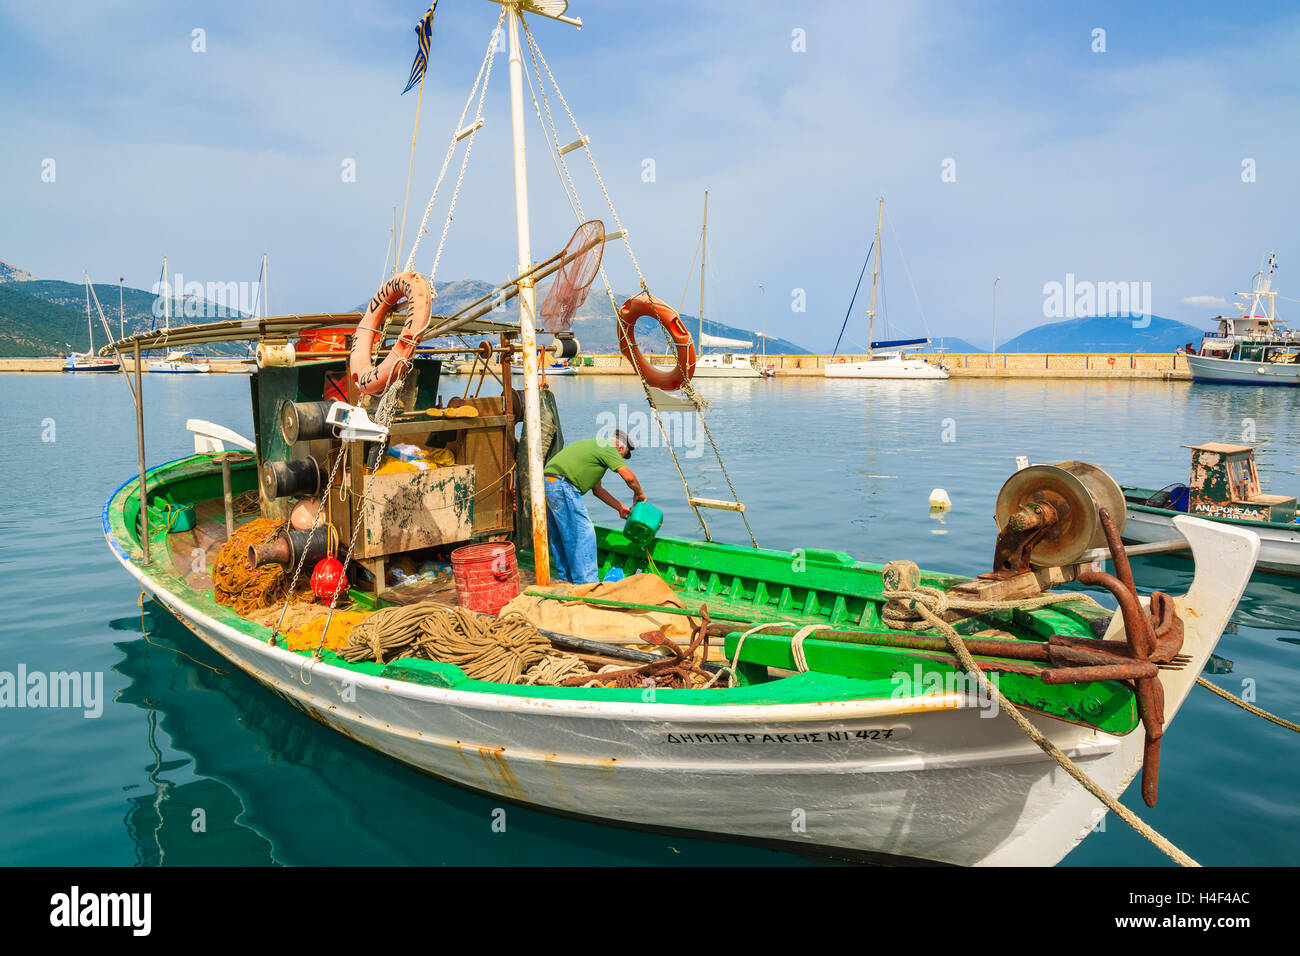 Le port de Sami, l'île de Céphalonie, Grèce - Sep 20, 2014 : pêcheur nettoie le bateau de pêche traditionnel grec à port de village sami. Bateaux colorés sont symbole d'îles grecques. Banque D'Images